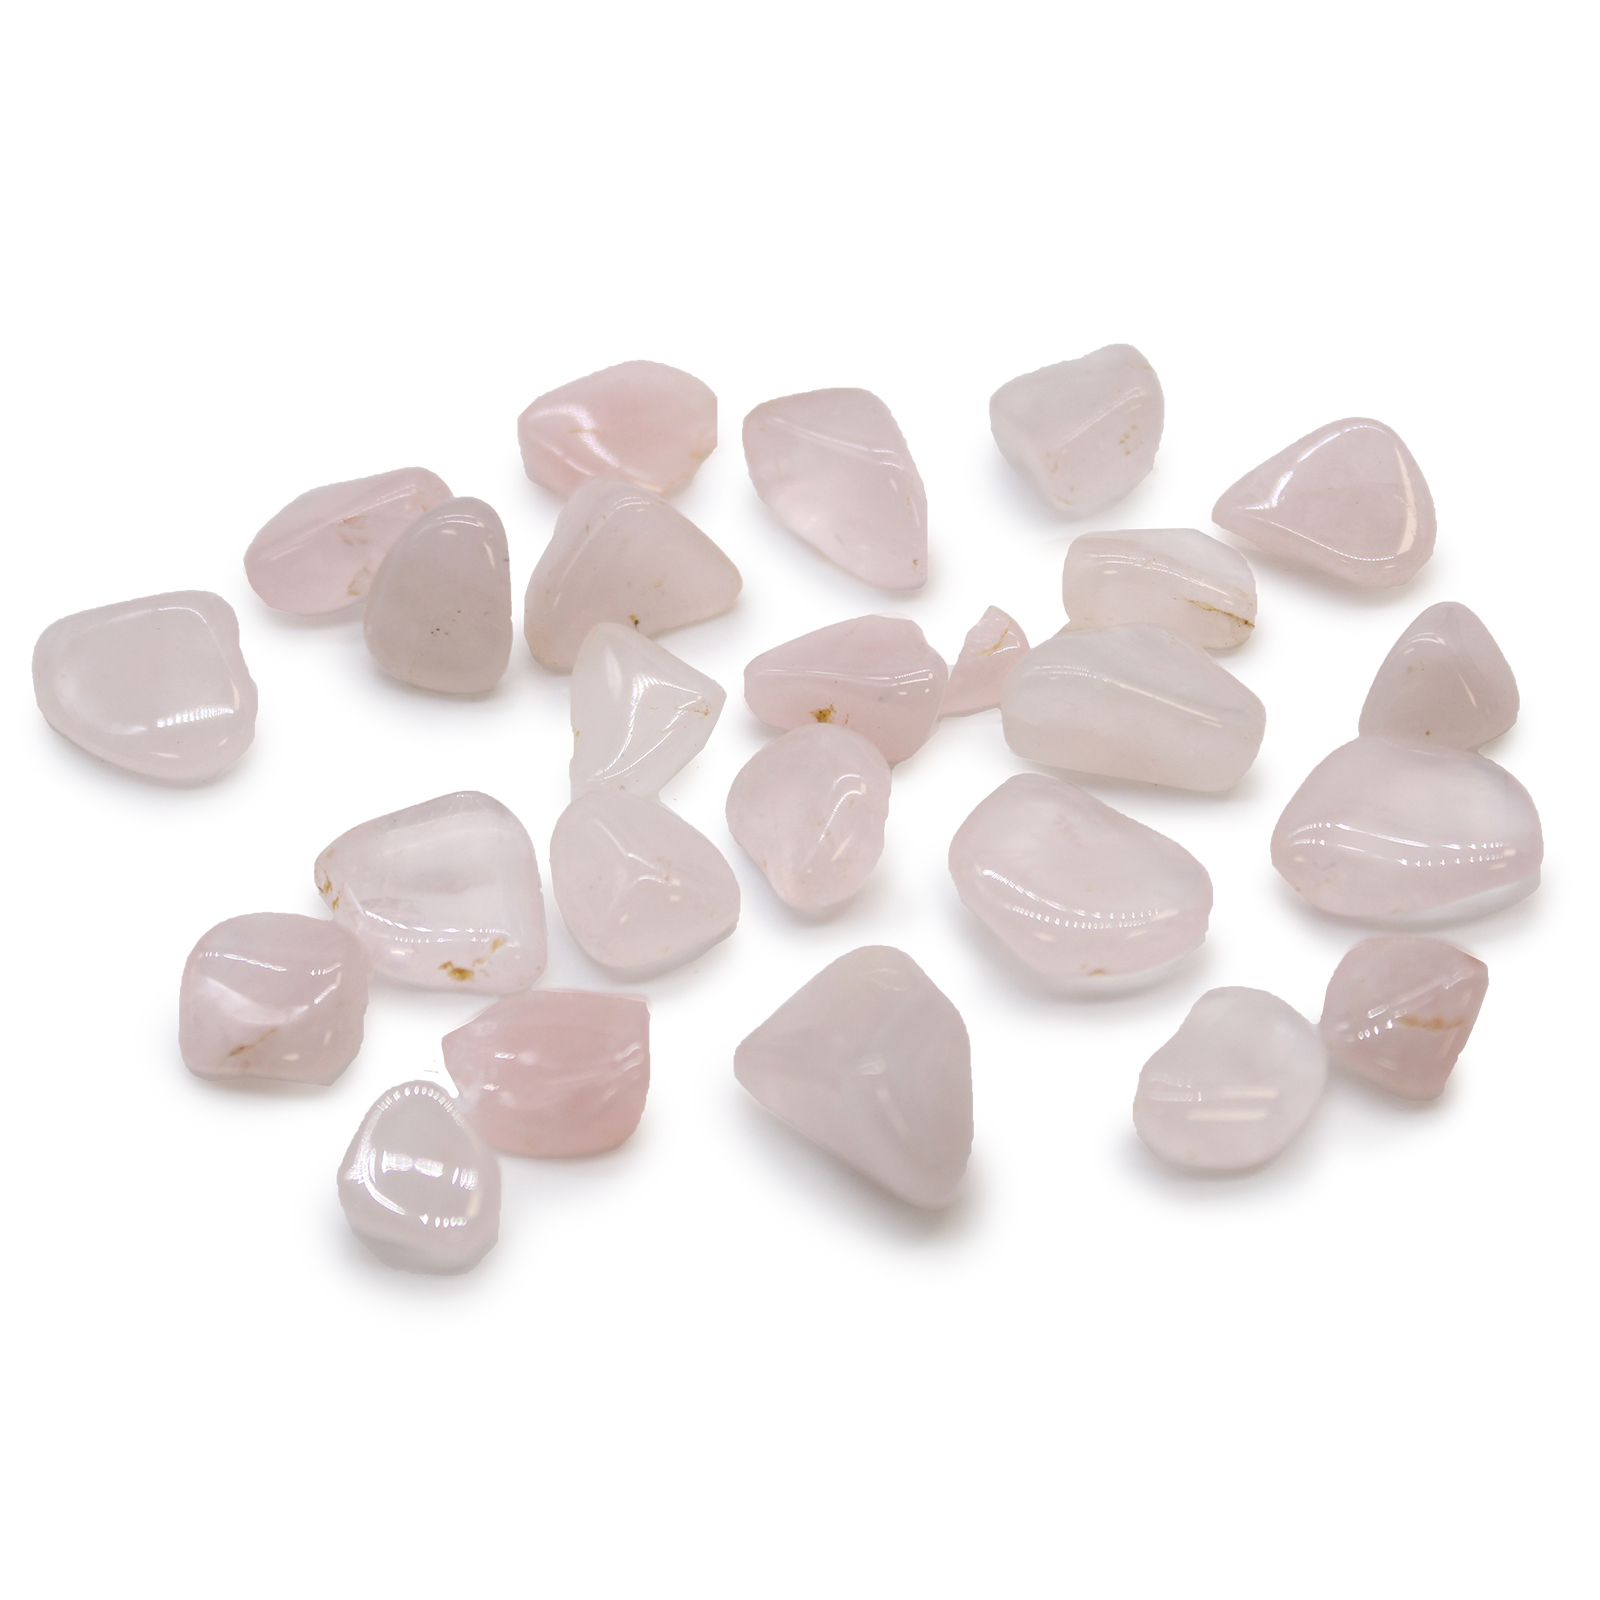 Small African Tumble Stones - Rose Quartz